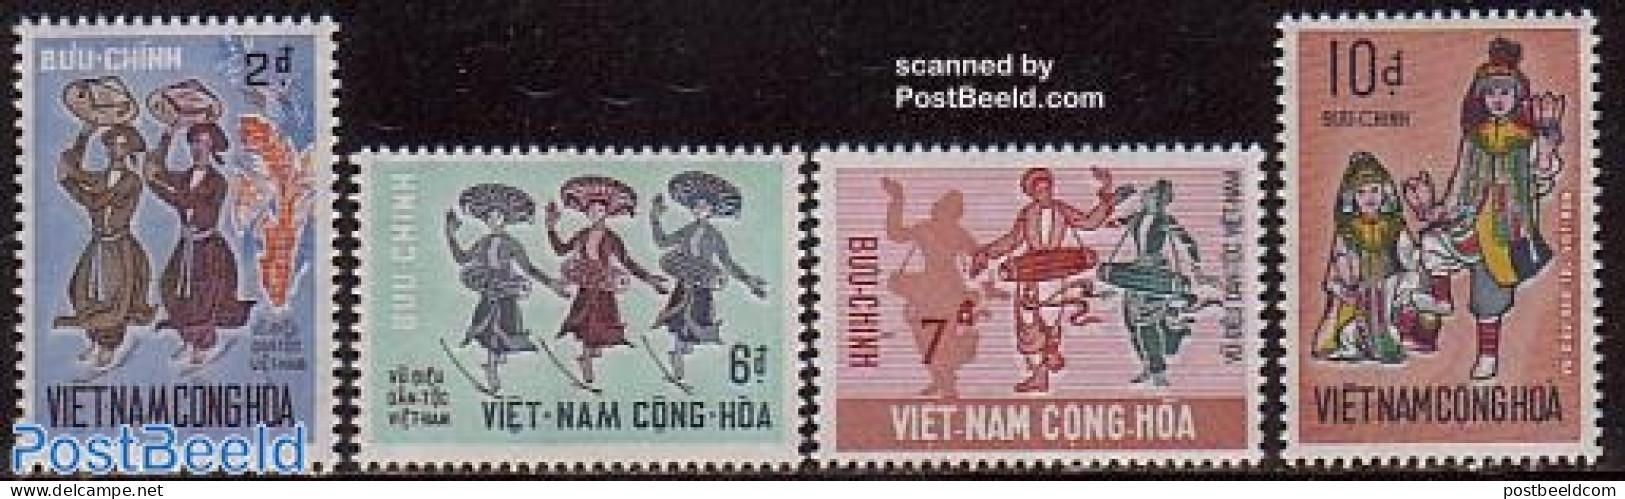 Vietnam, South 1971 Folk Dances 4v, Mint NH, Performance Art - Dance & Ballet - Music - Dance